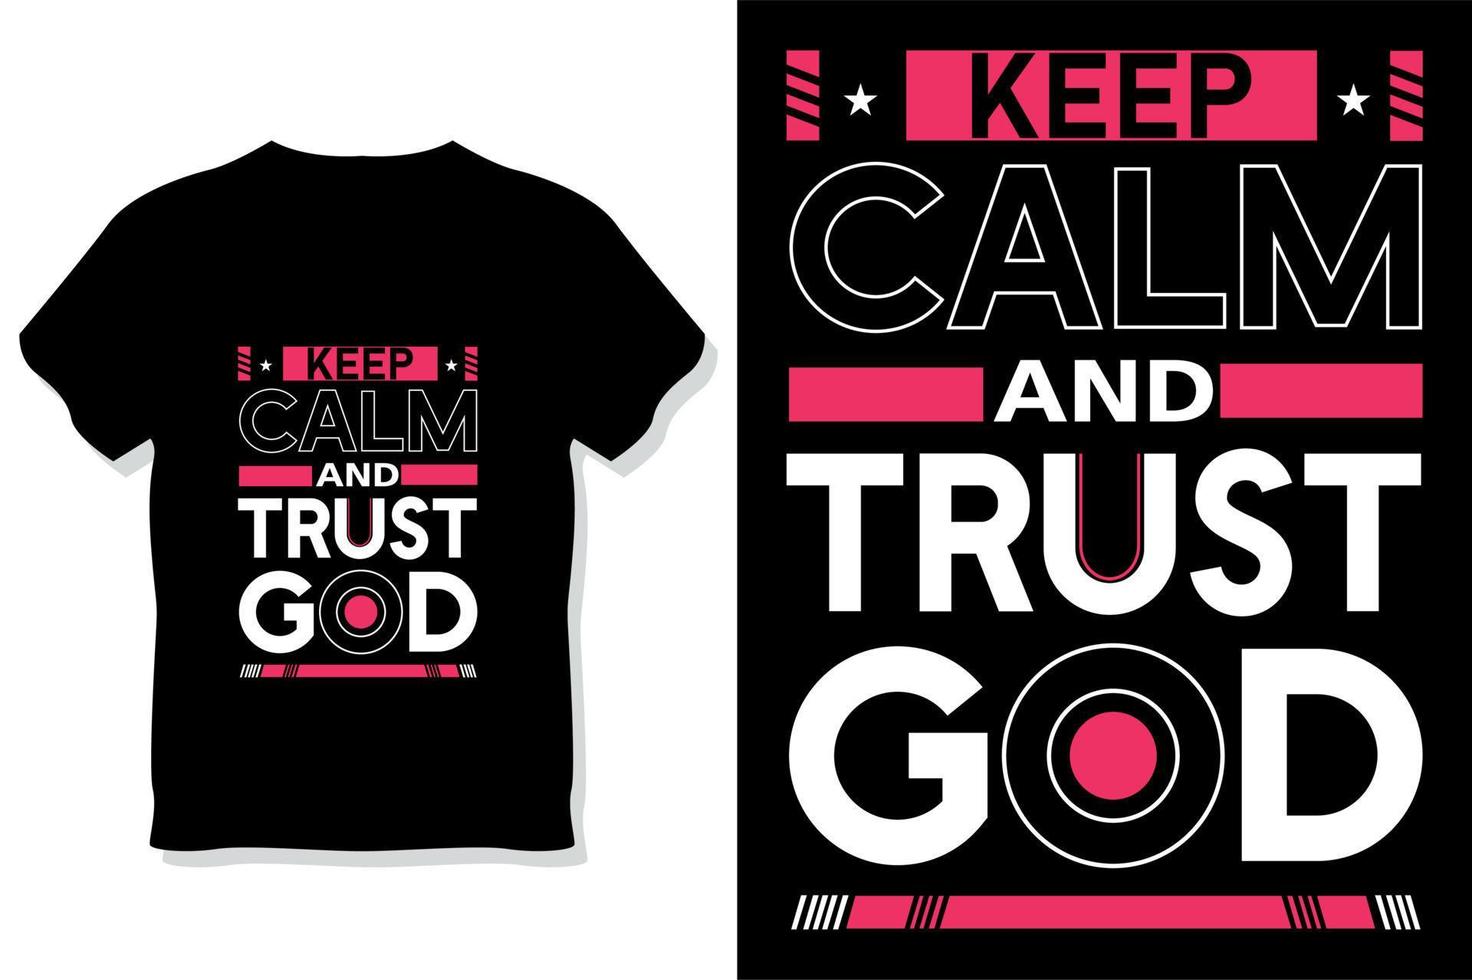 ha kvar lugna och förtroende Gud motiverande Citat typografi t skjorta design vektor